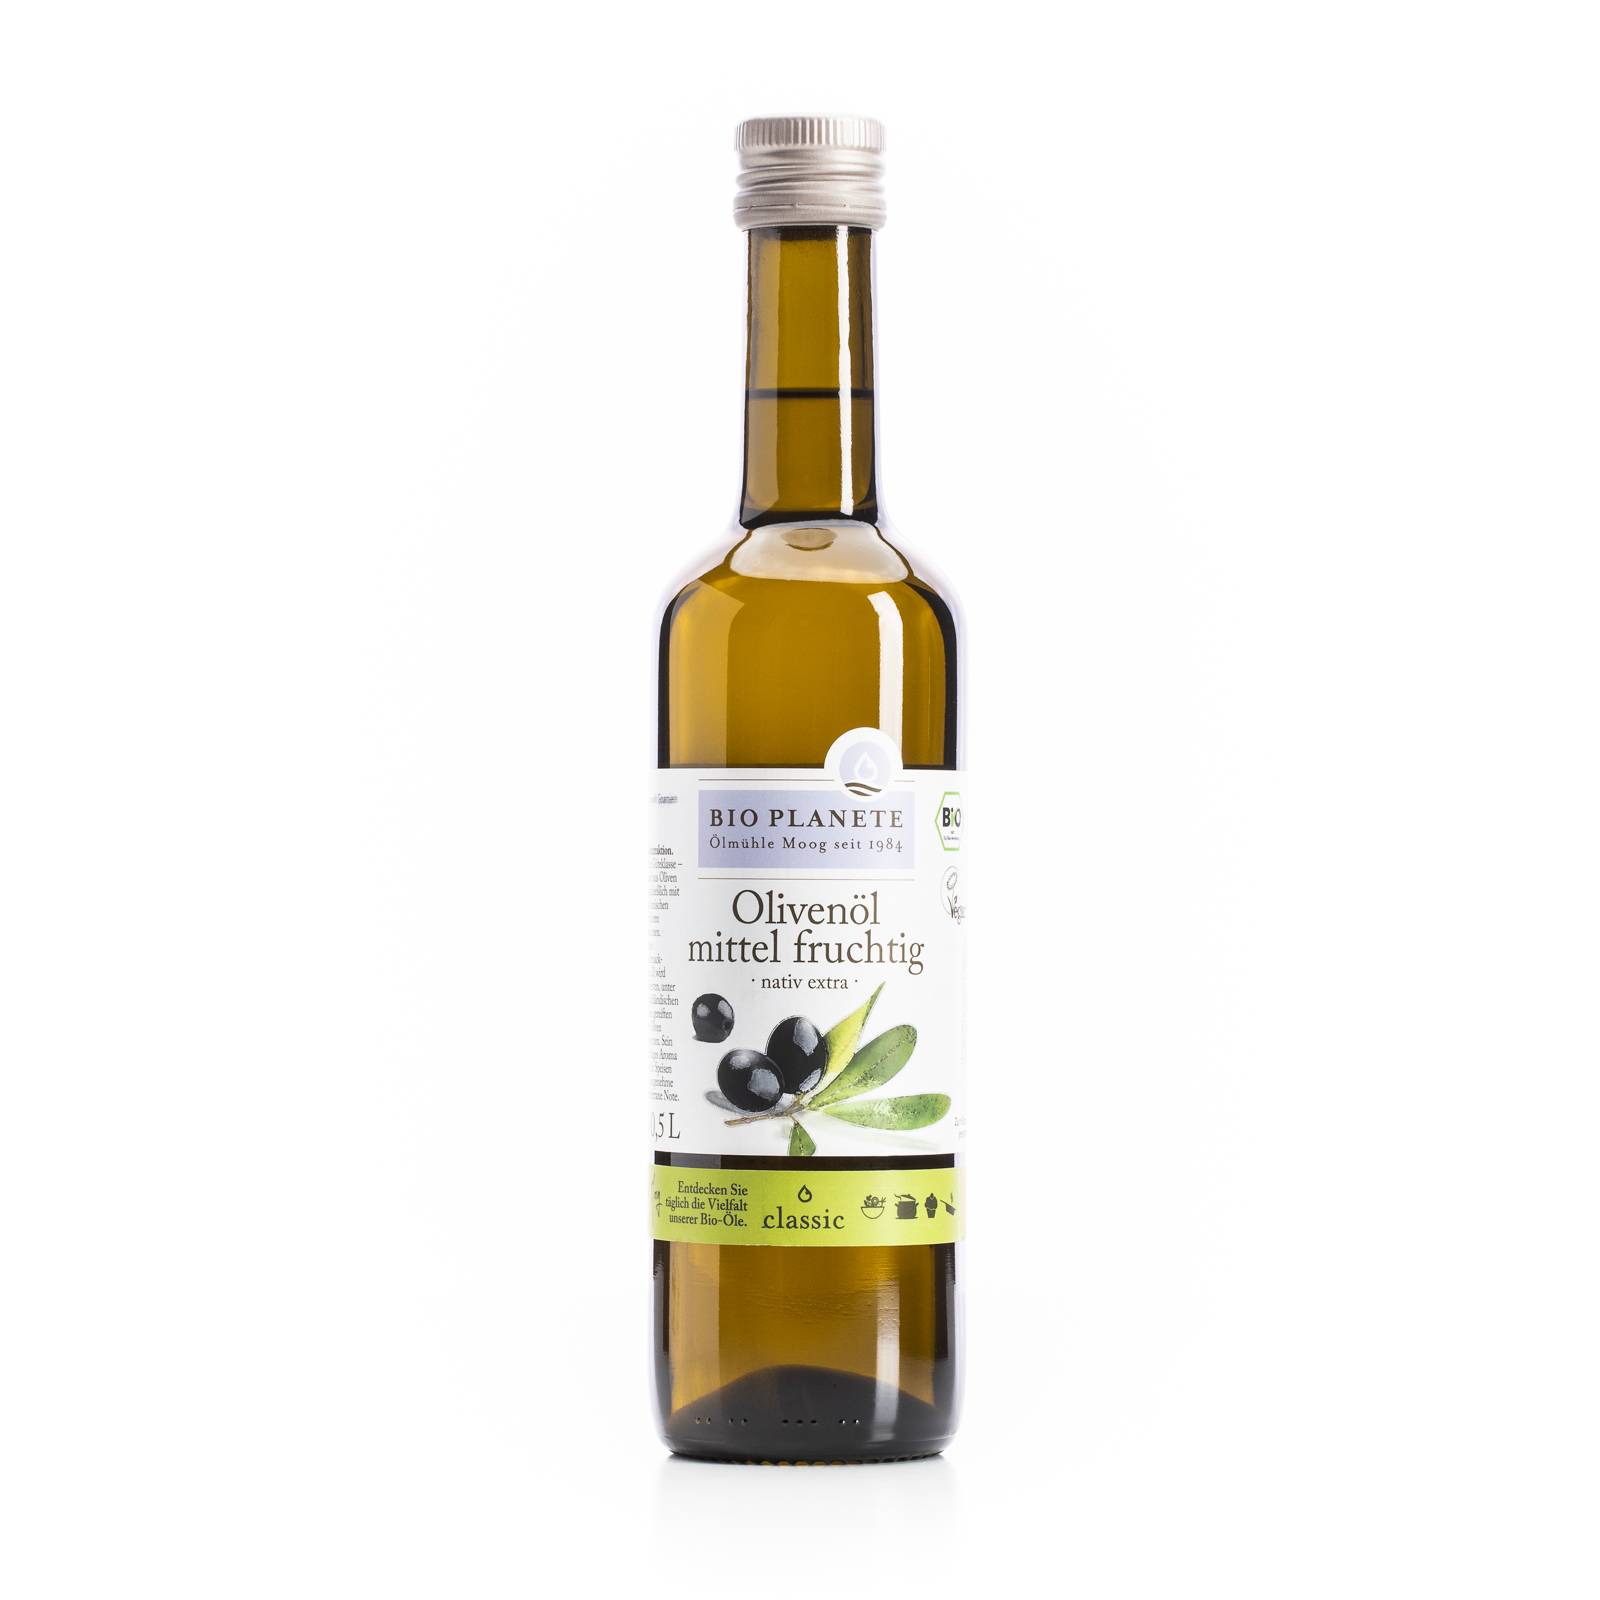 l_bio_planete_olivenoel_mittelfruchtig_500ml Oele & Essig - Olivenöl mittel fruchtig - Hofladen Altkö